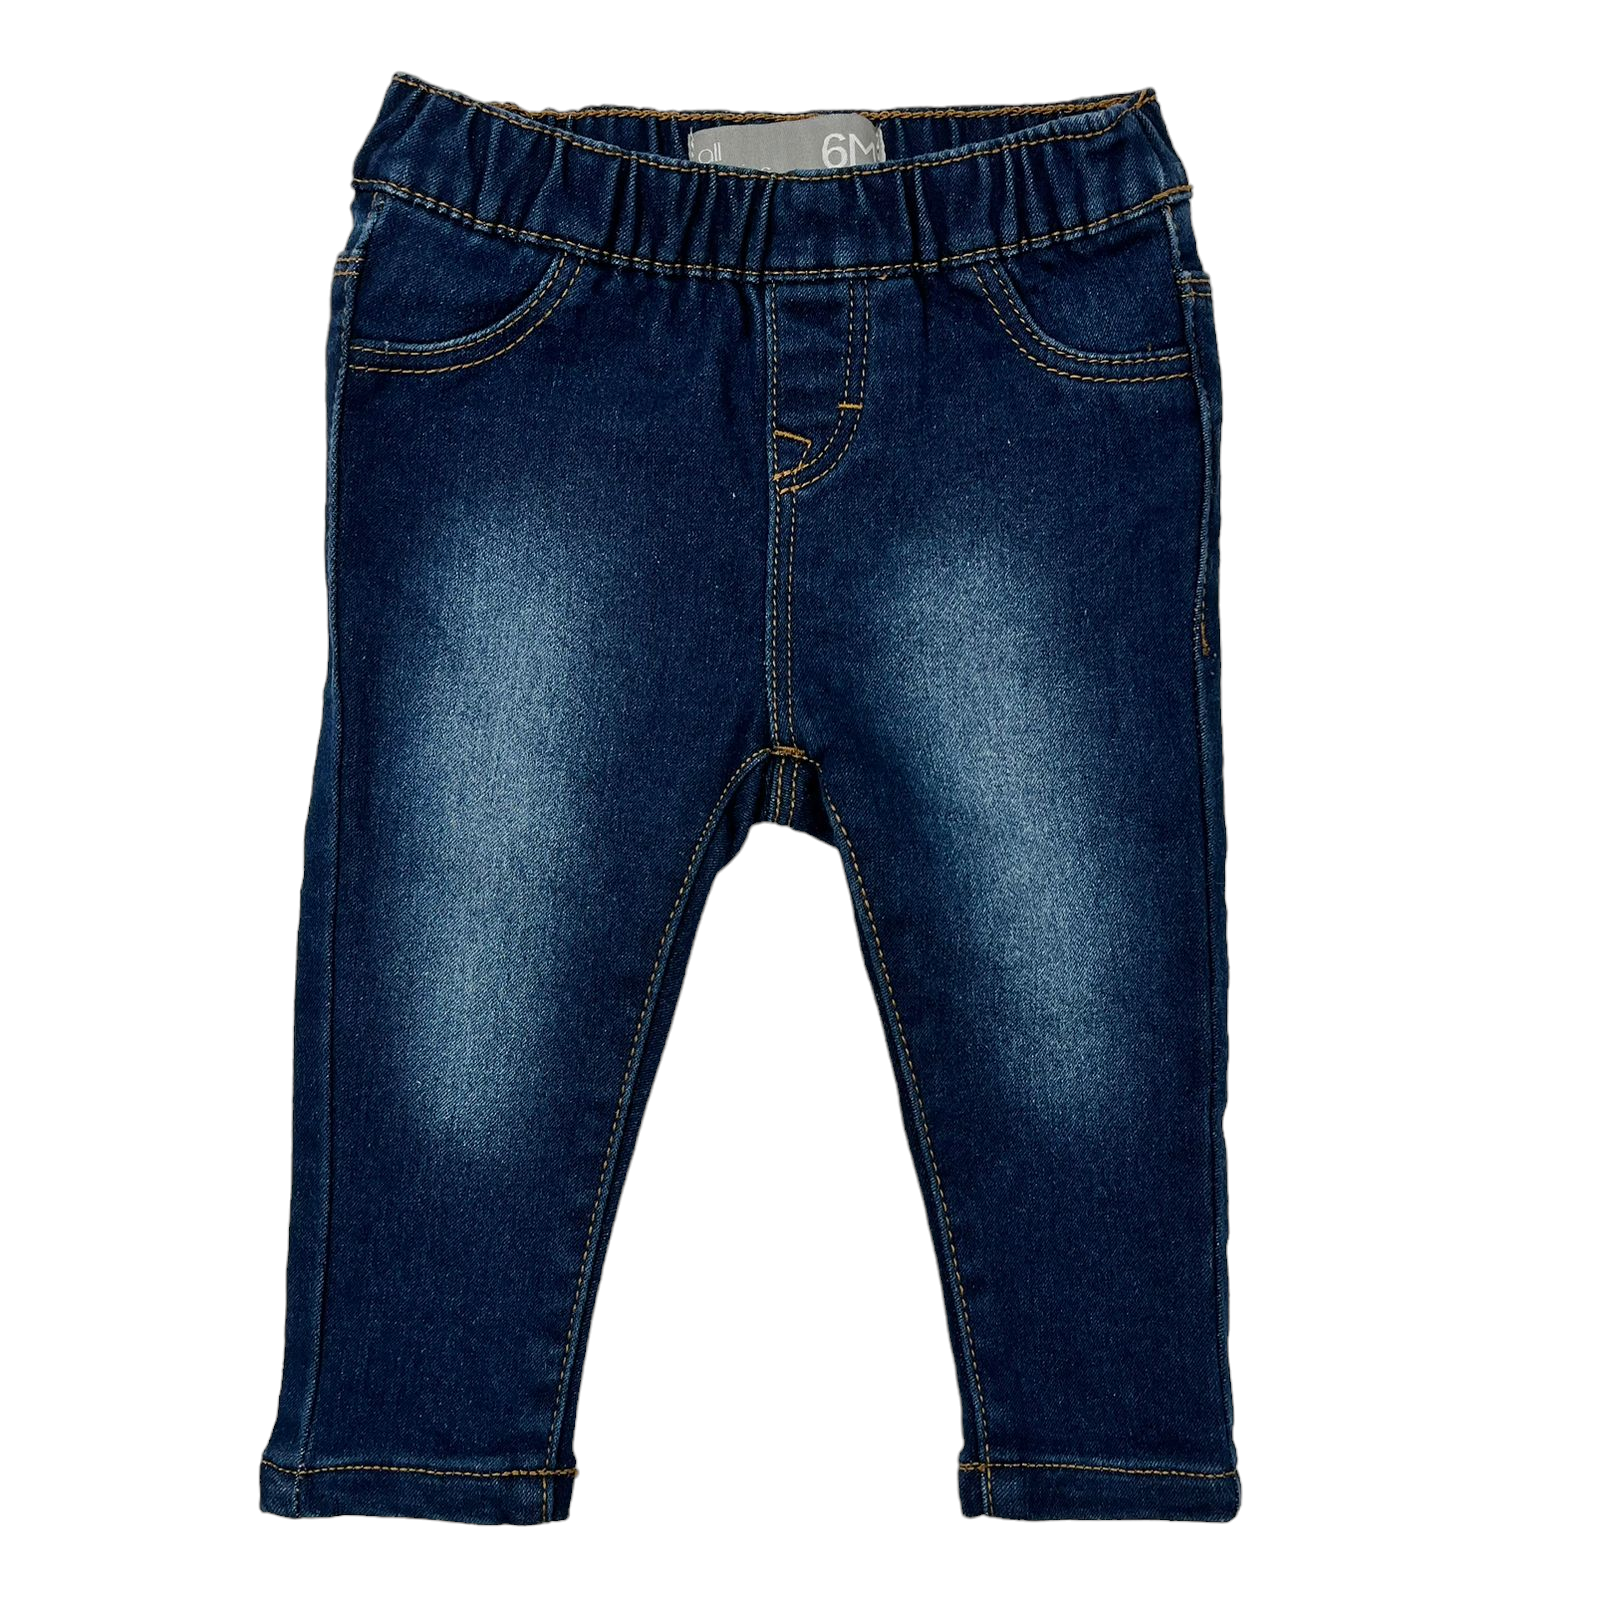 Jeans mezclilla con pretina ajustable bolsillos falsos